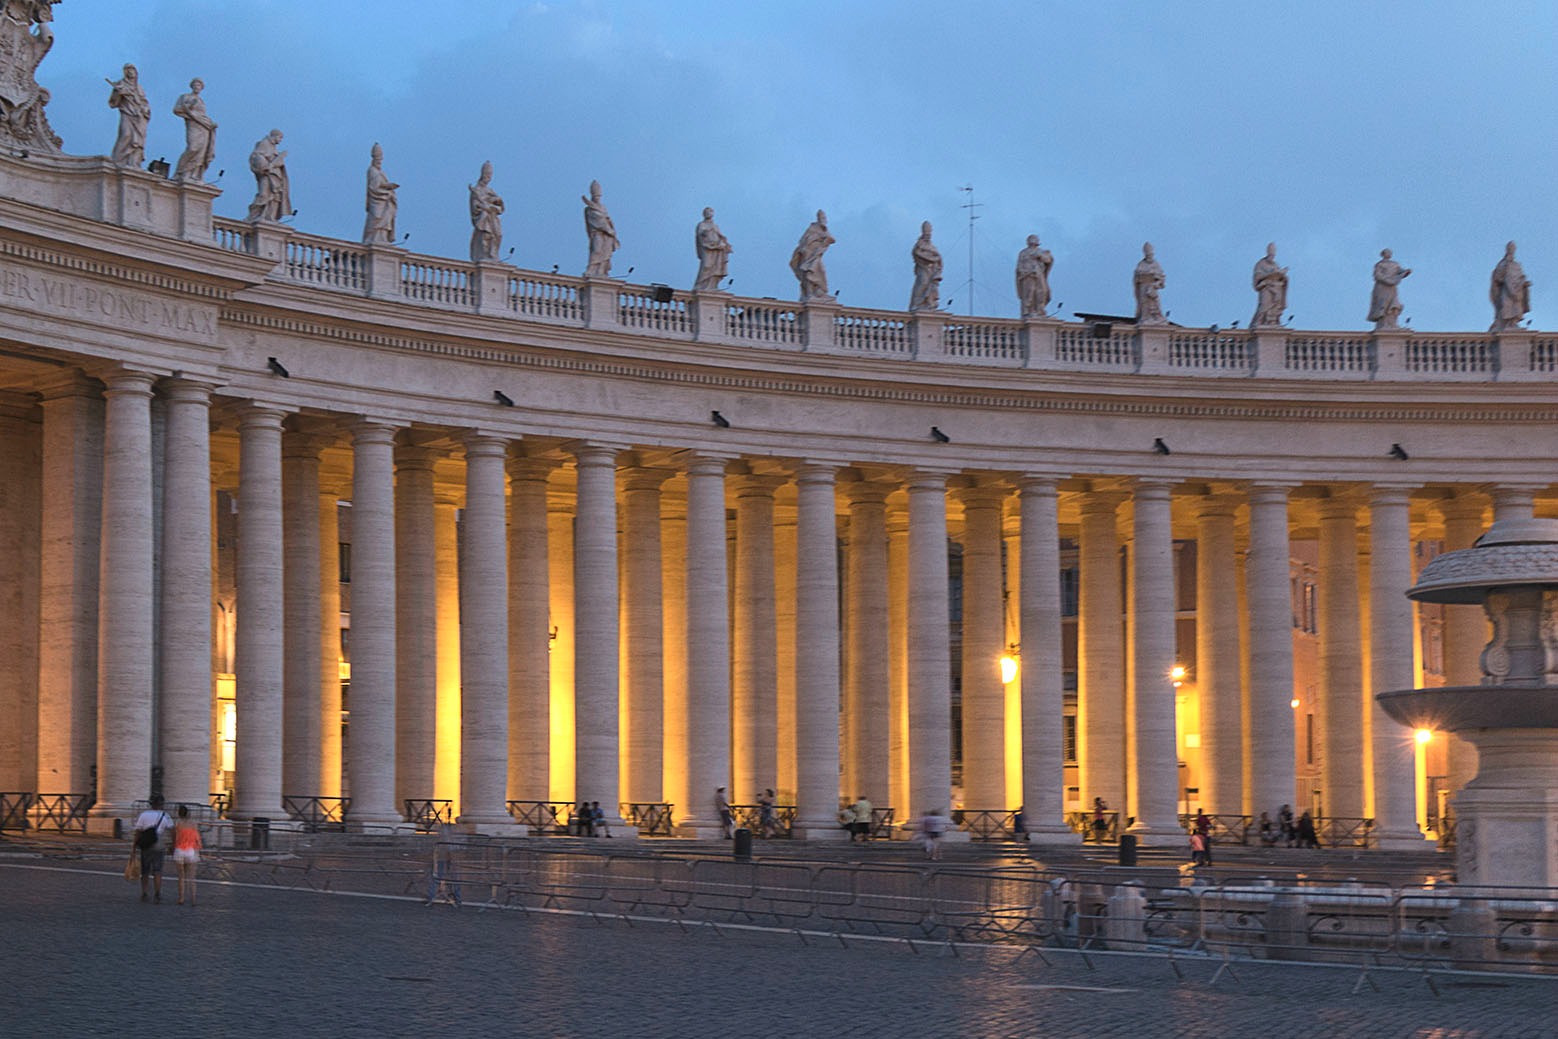 Place Saint-Pierre de Rome. (Photo: Flickr/123_456/CC BY-NC-ND 2.0)